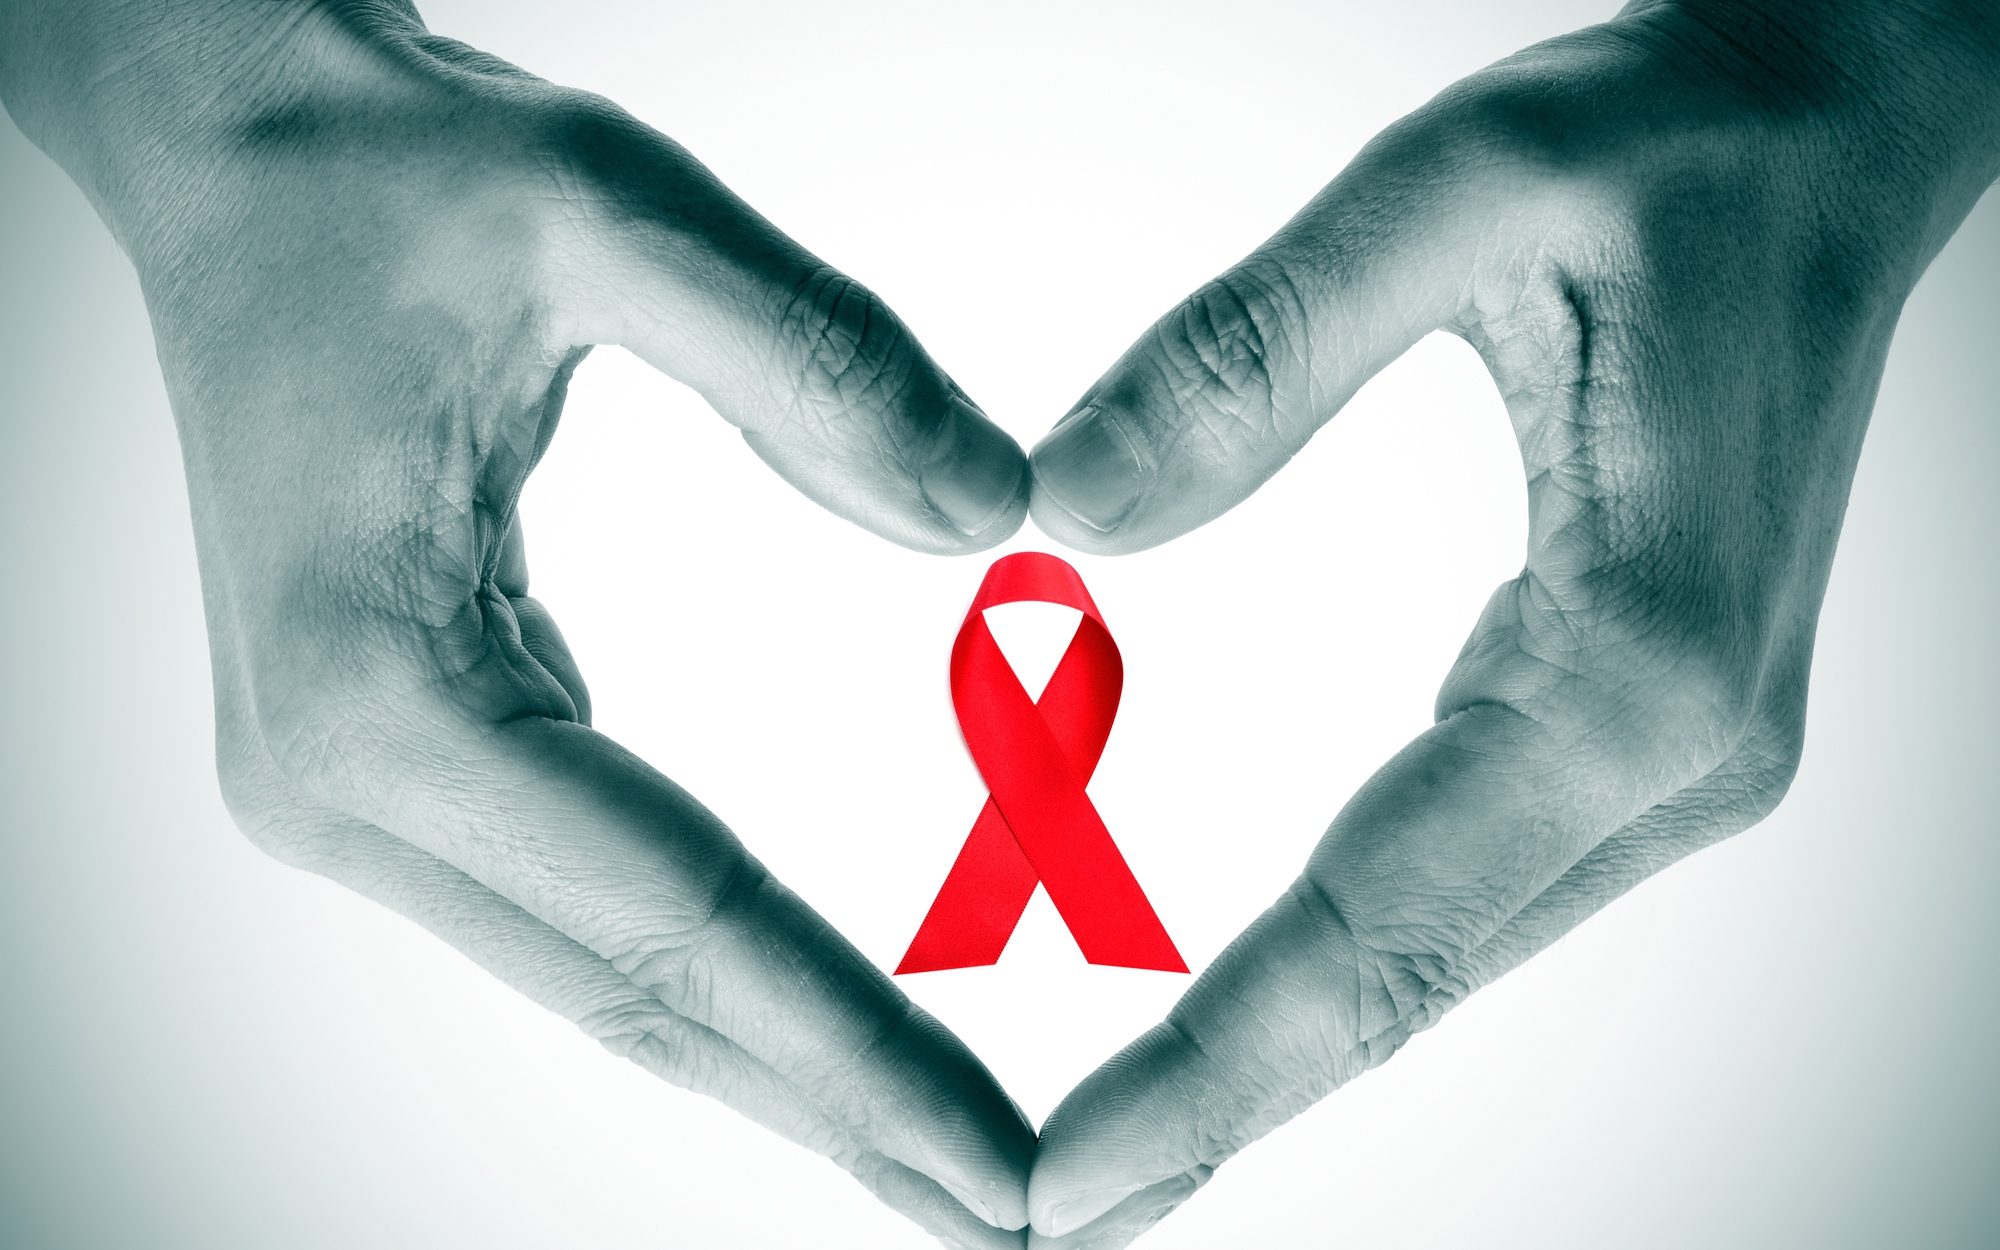 Thiếu hiểu biết về HIV là nguyên nhân dẫn tới kỳ thị với người bệnh